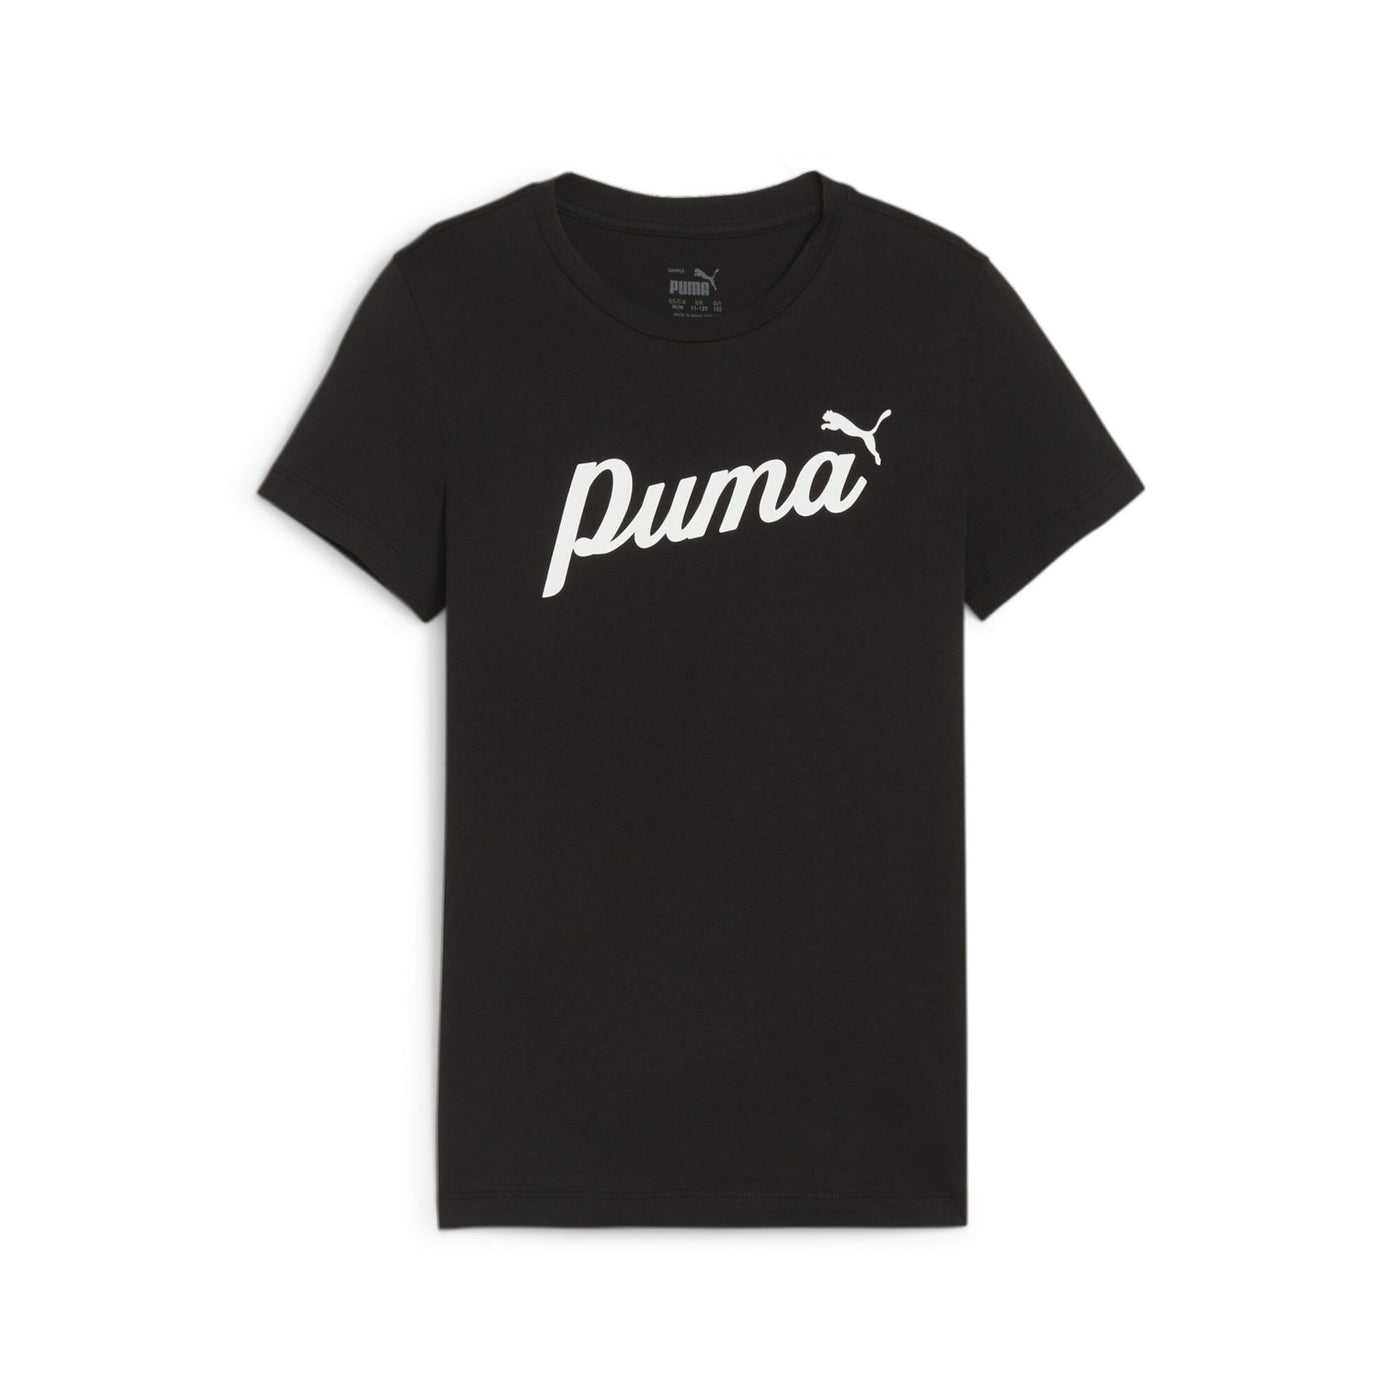 679402-01 - T-Shirt - Puma